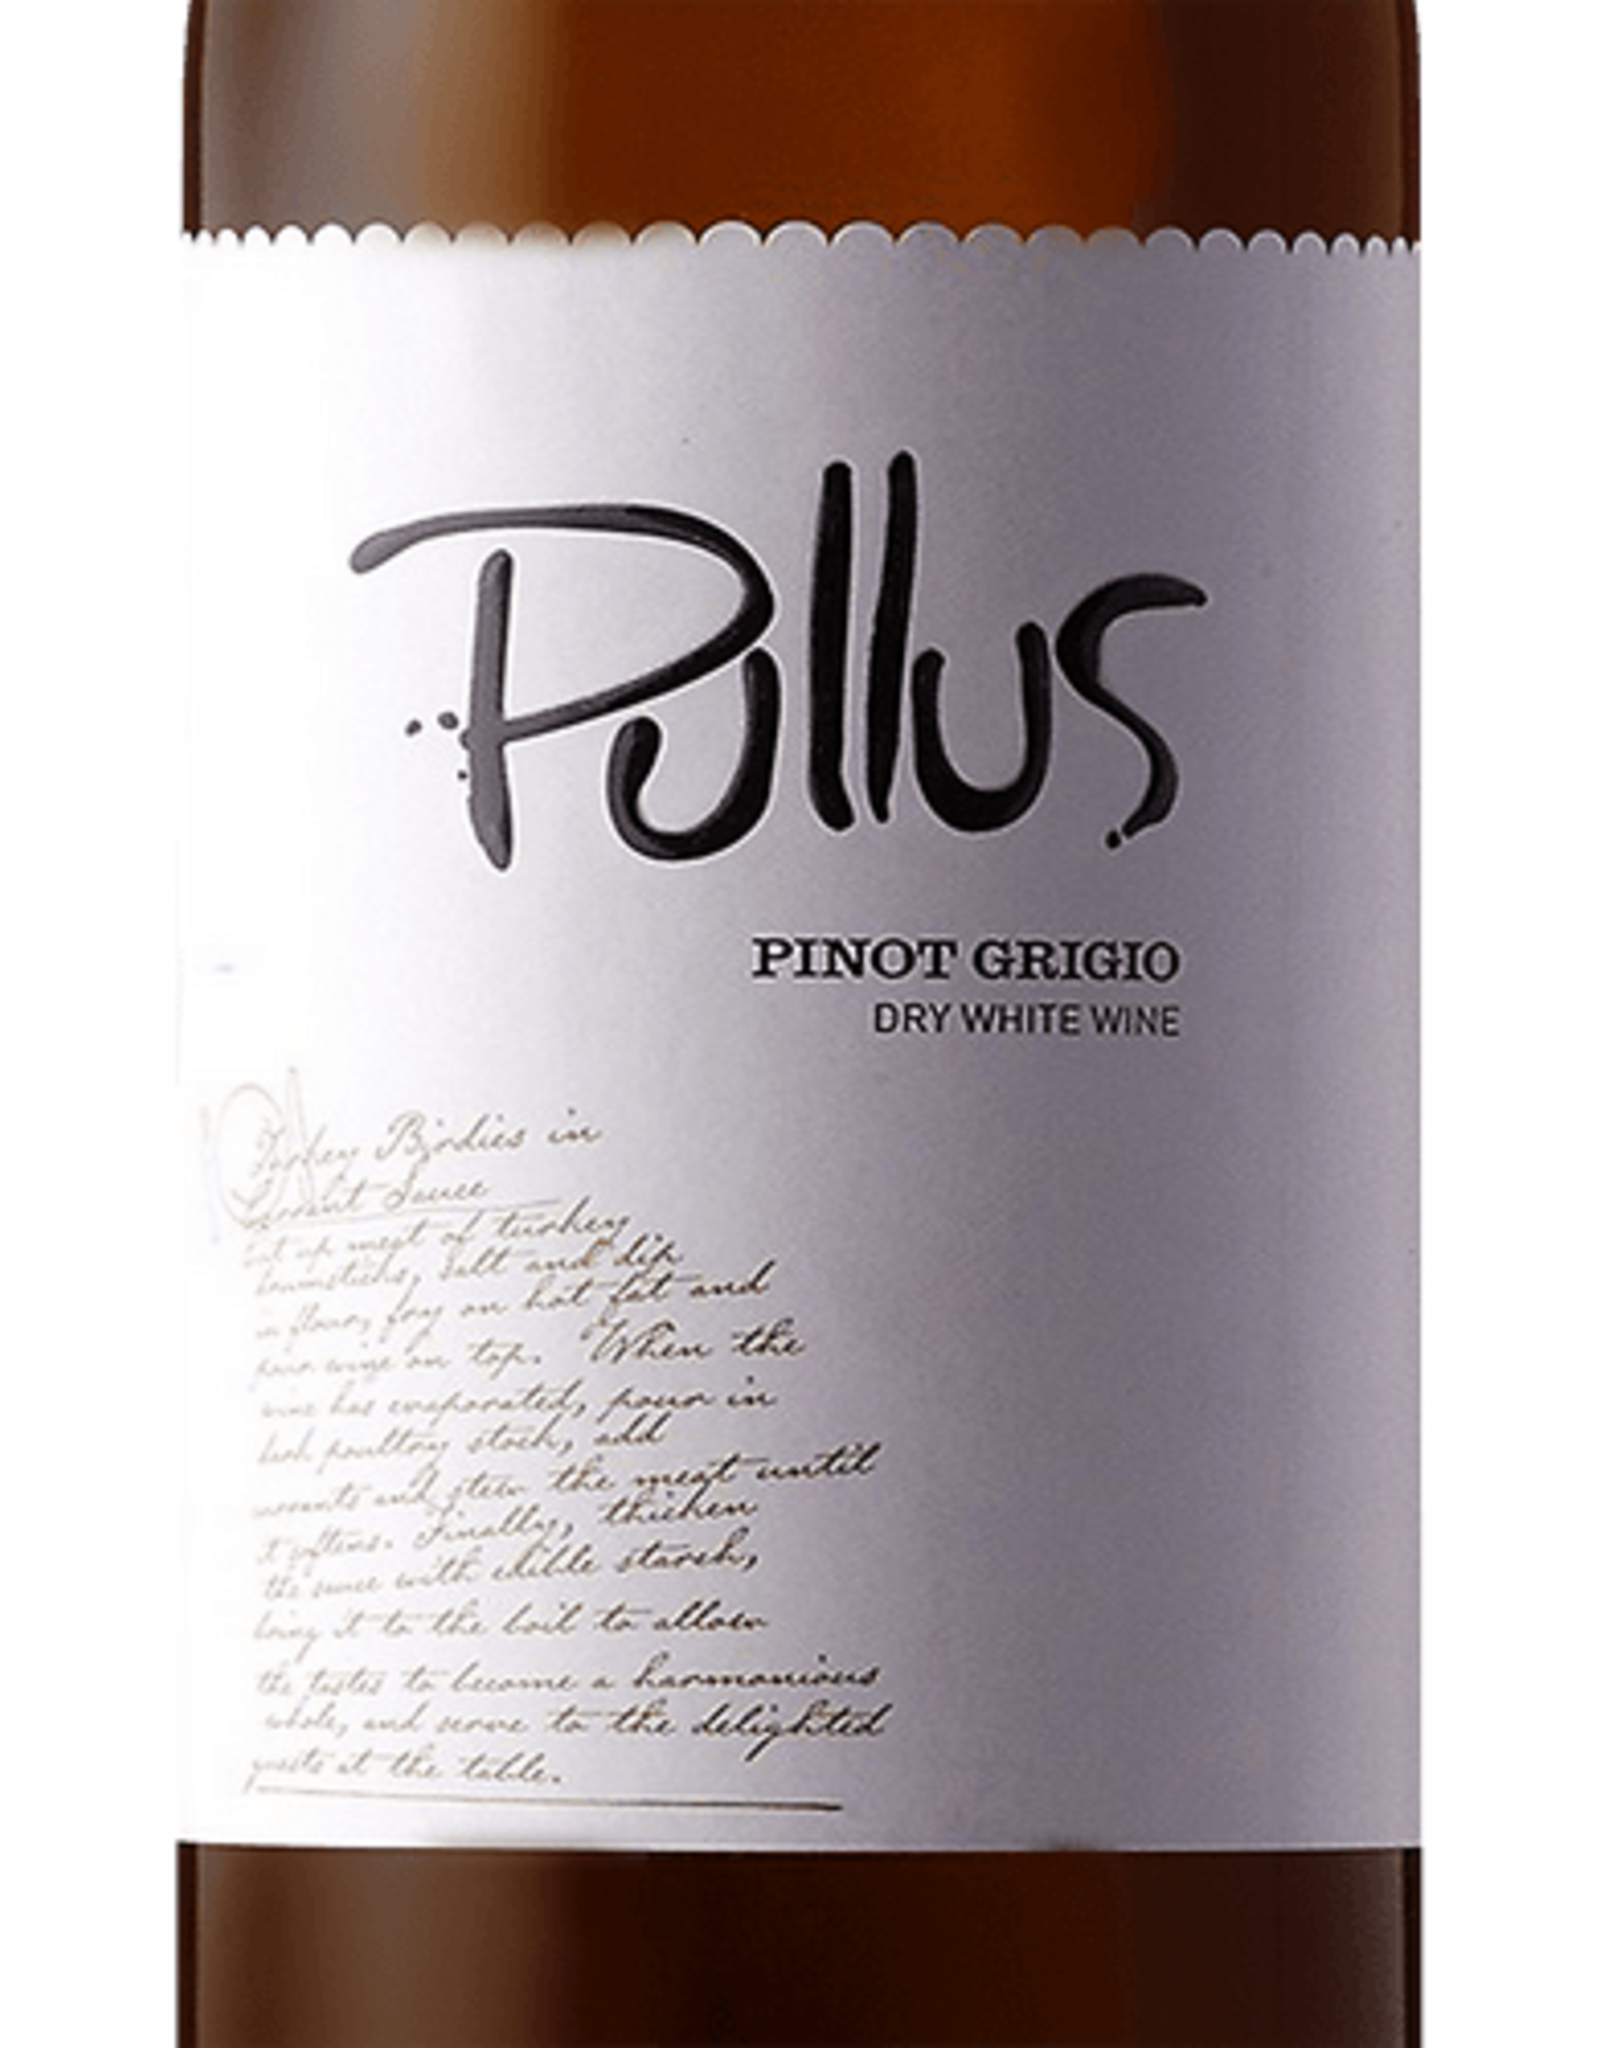 Pullus Pinot Grigio